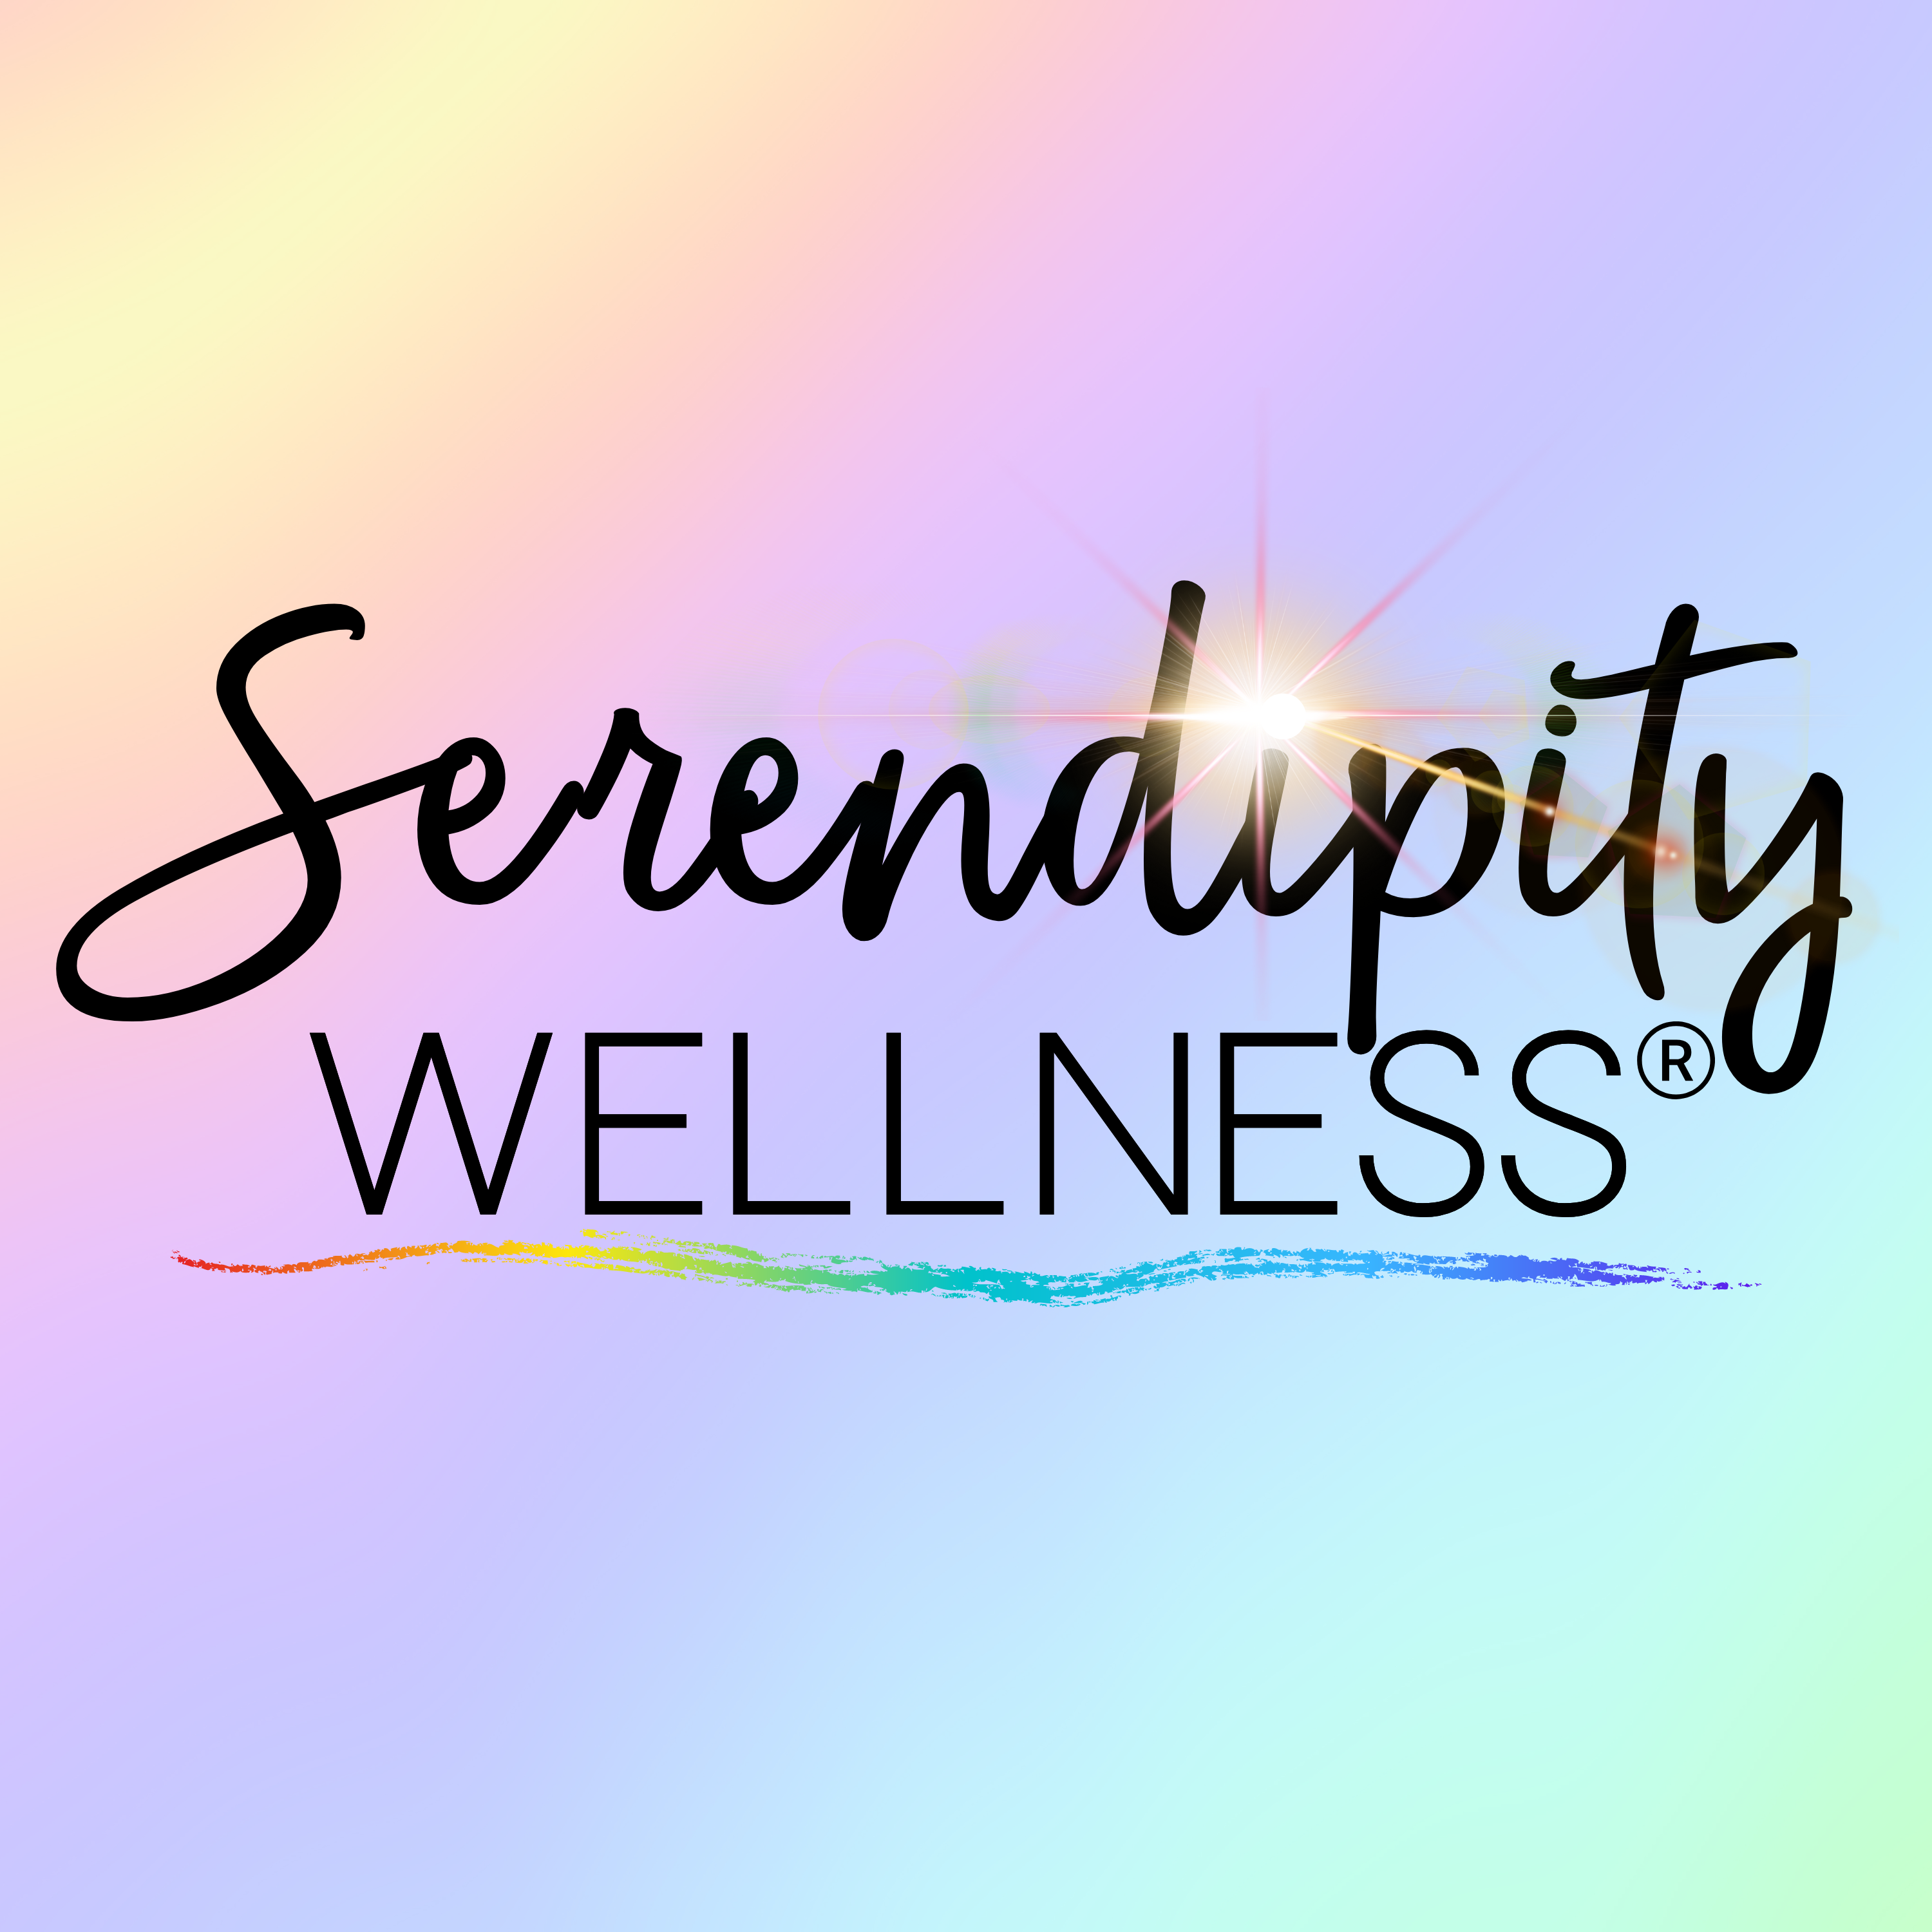 Serendipity Wellness